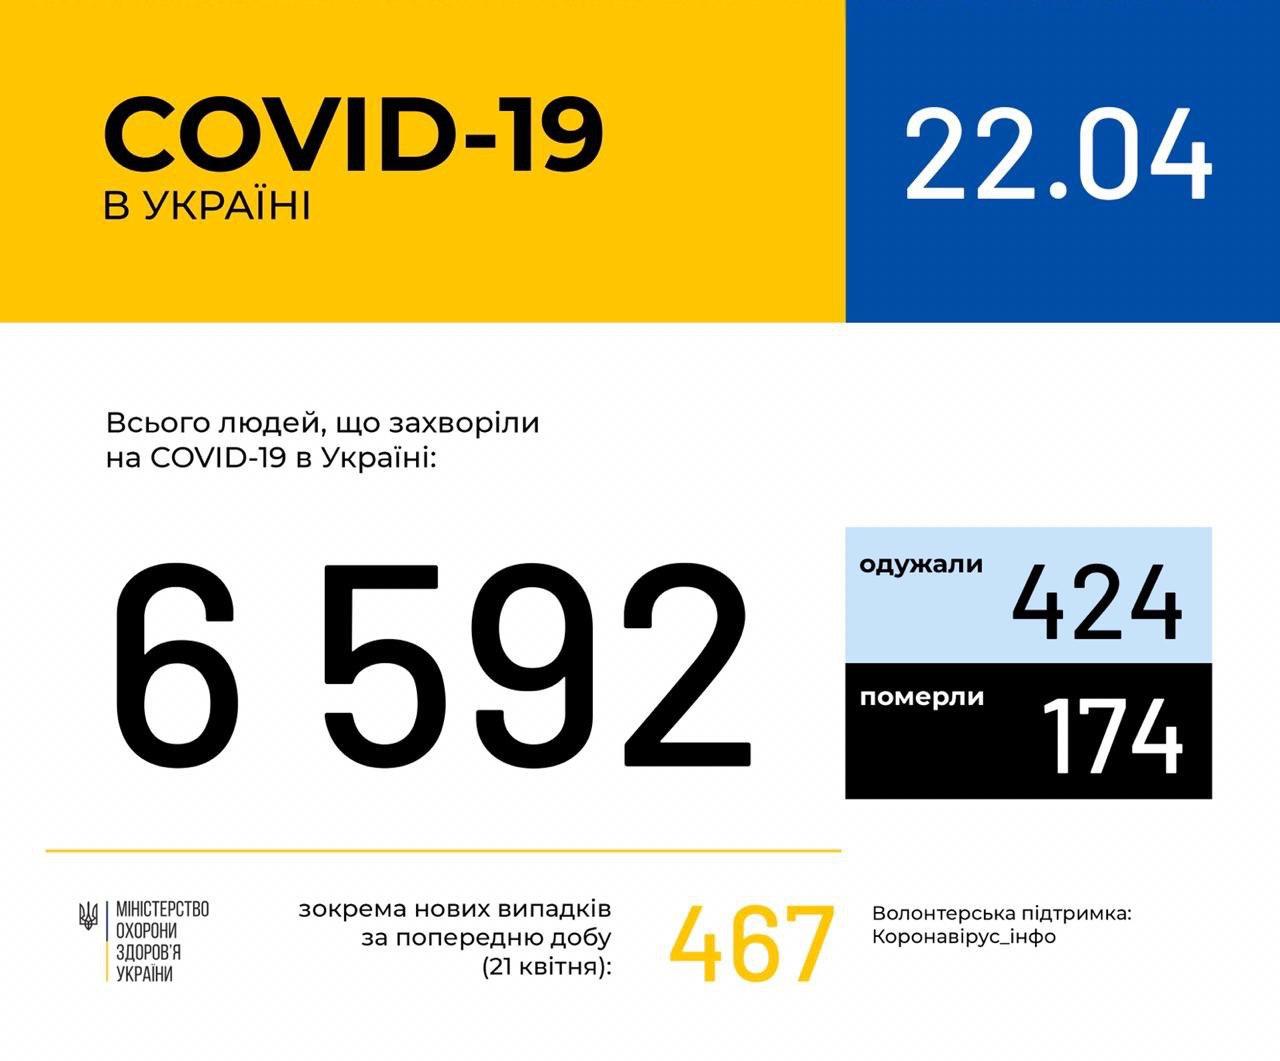 В Україні зафіксовано 6592 випадки коронавірусної хвороби COVID-19, - МОЗ